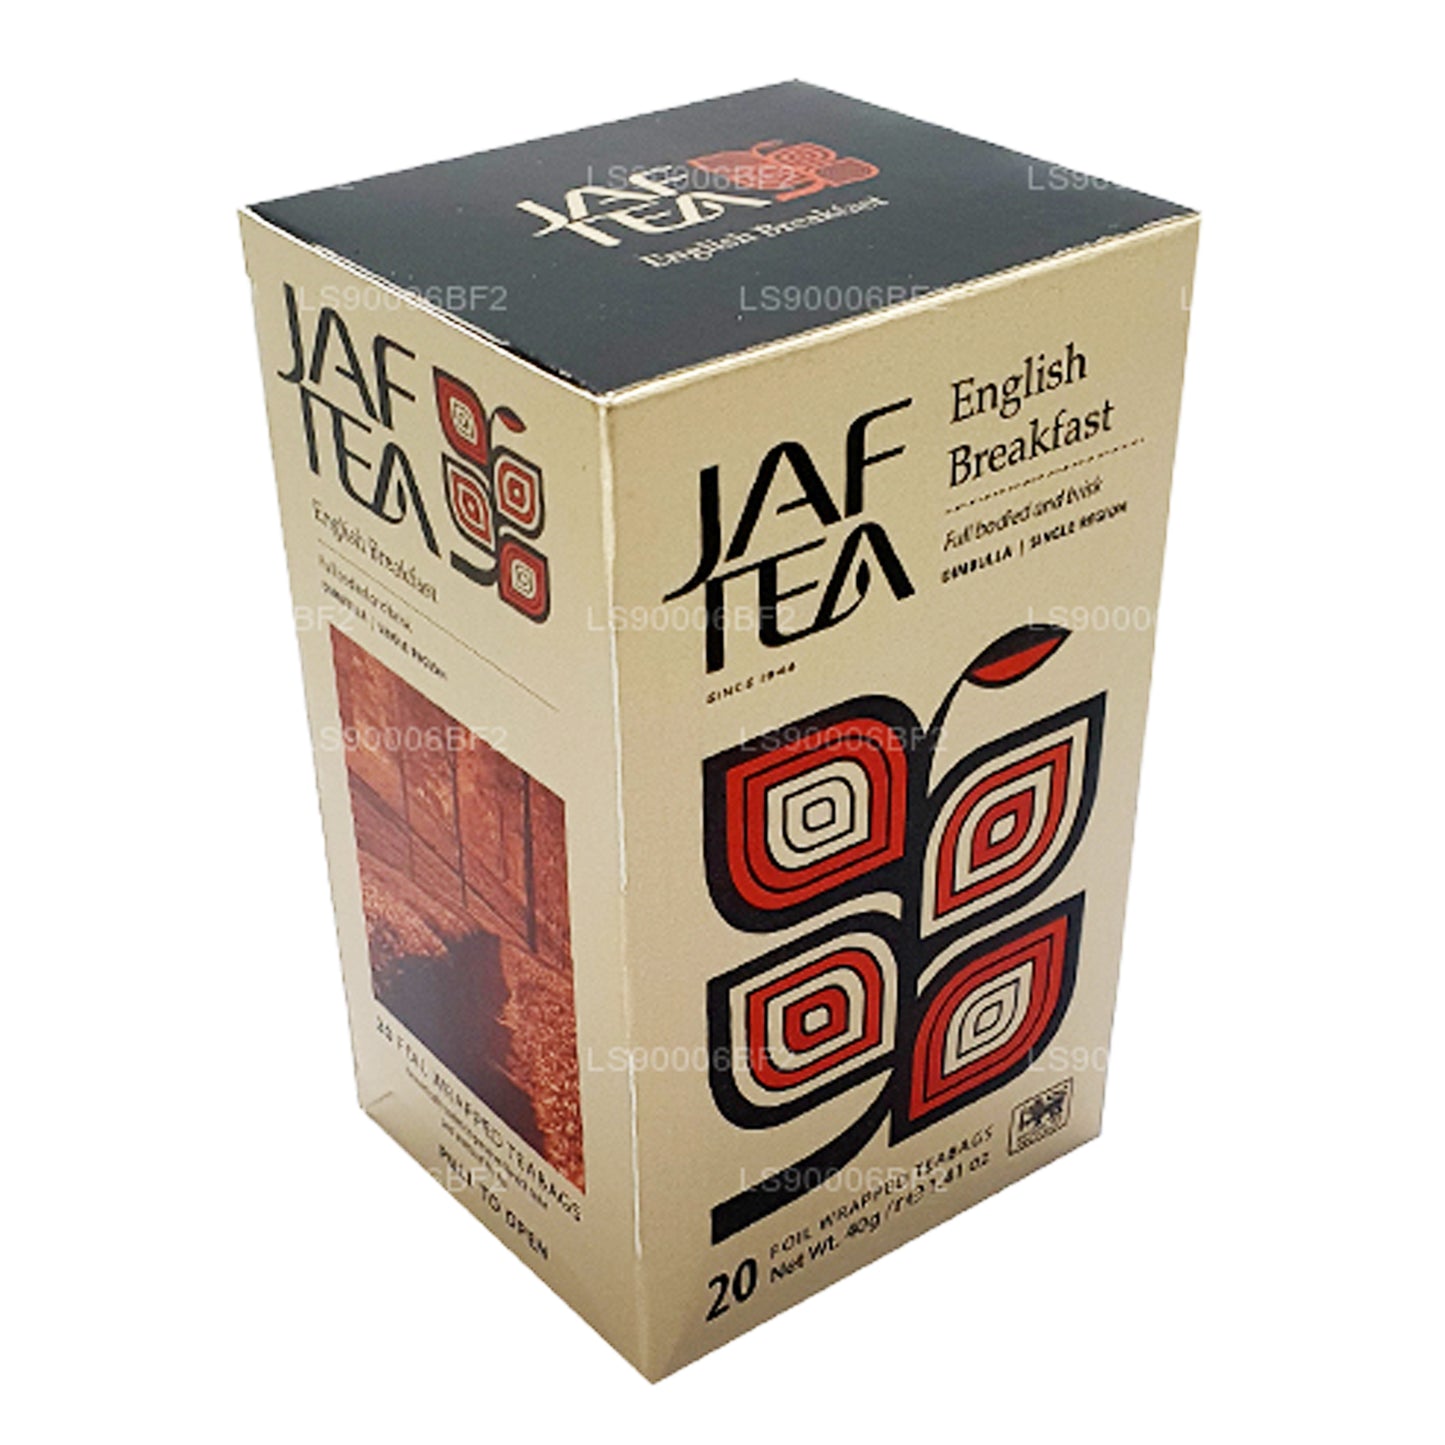 Jaf Tea English Breakfast (40 g) 20 theezakjes